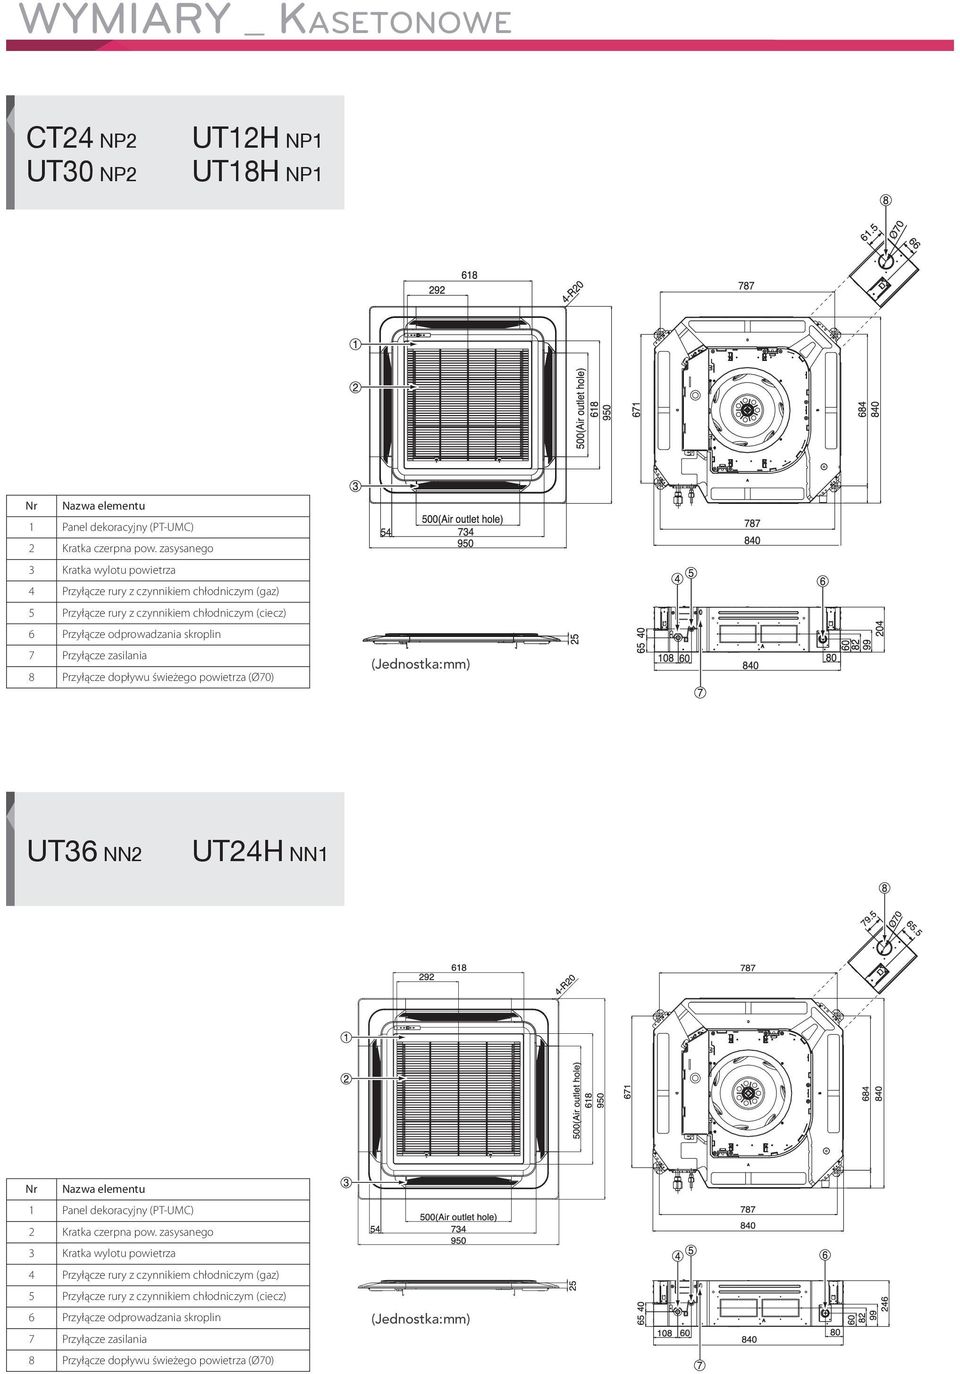 skroplin 7 Przyłącze zasilania 8 Przyłącze dopływu świeżego powietrza (Ø70) UT36 NN2 UT24H NN1 1 Panel dekoracyjny (PT-UMC) 2 Kratka czerpna pow.